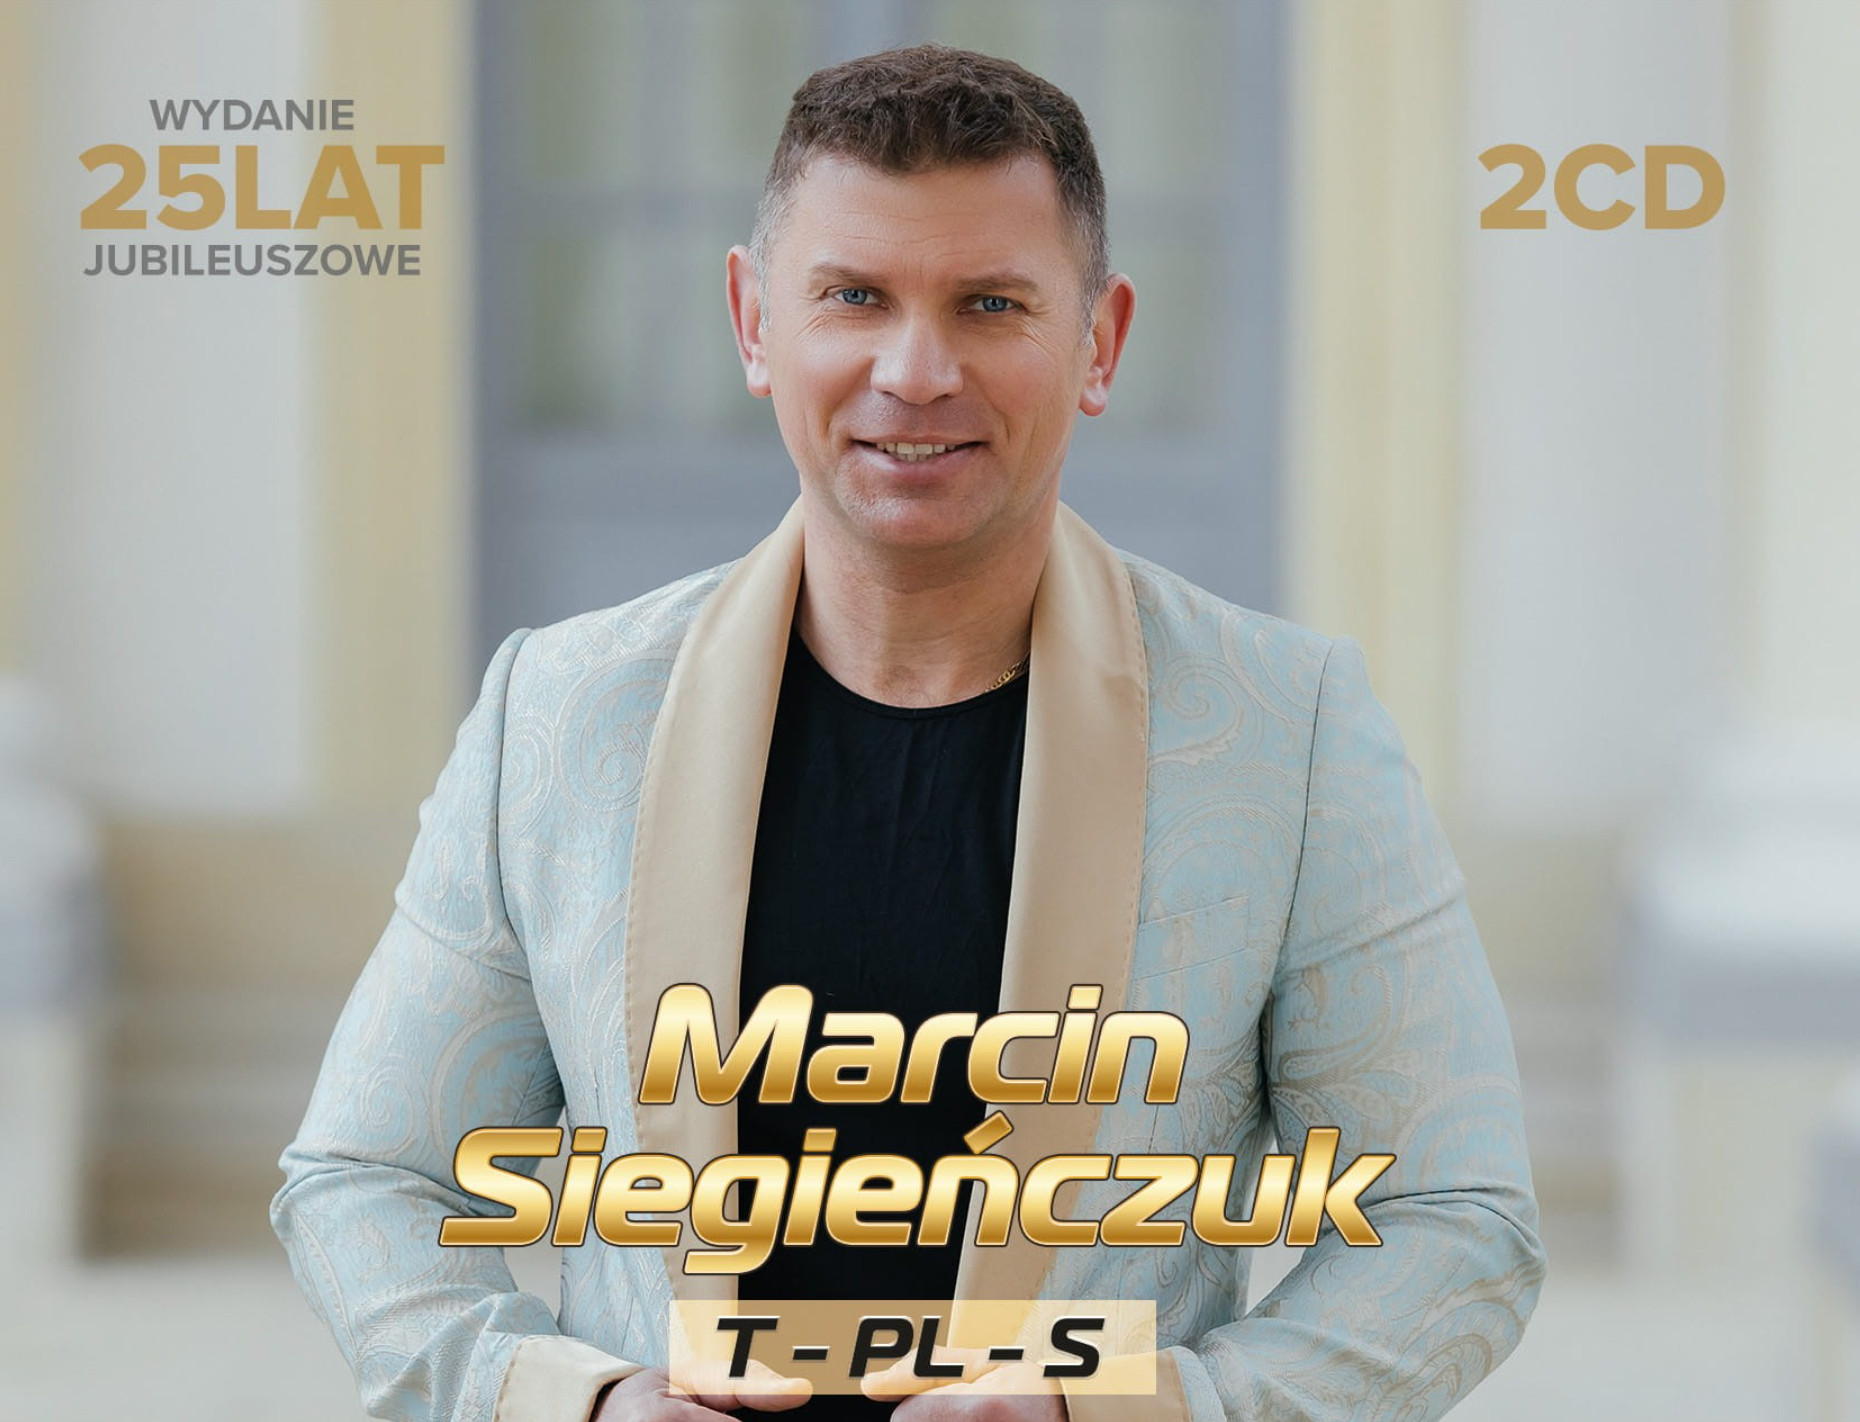 Marcin Siegieńczuk - Mistrz Polskiego Disco Polo przedstawia dwupłytowy album 